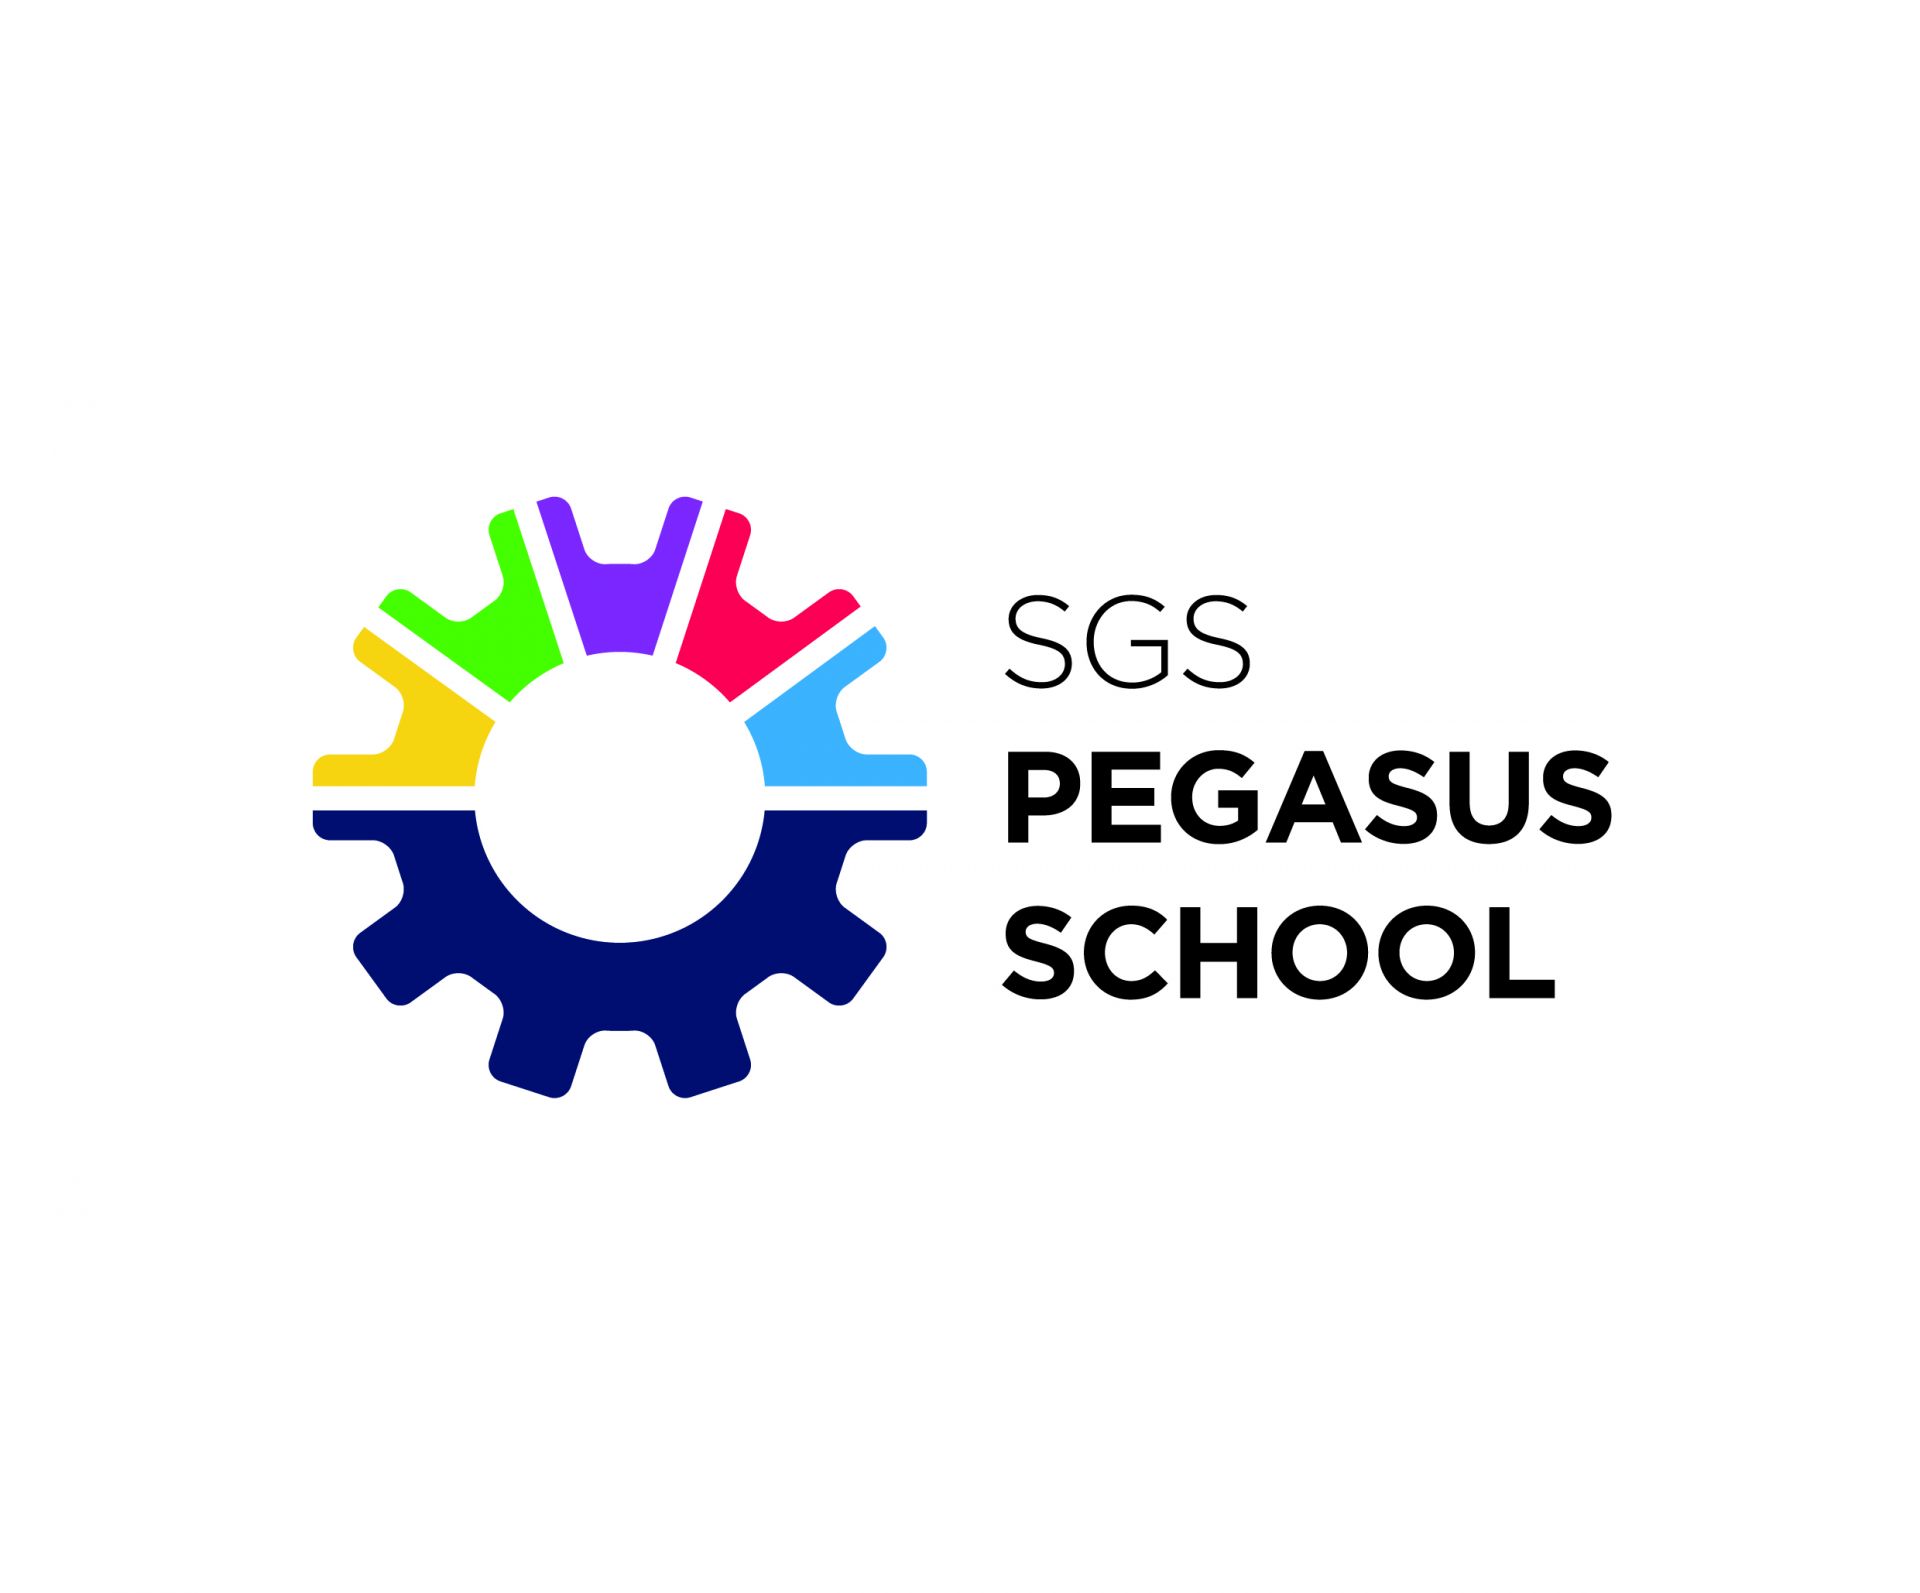 sgs pegasus school logo